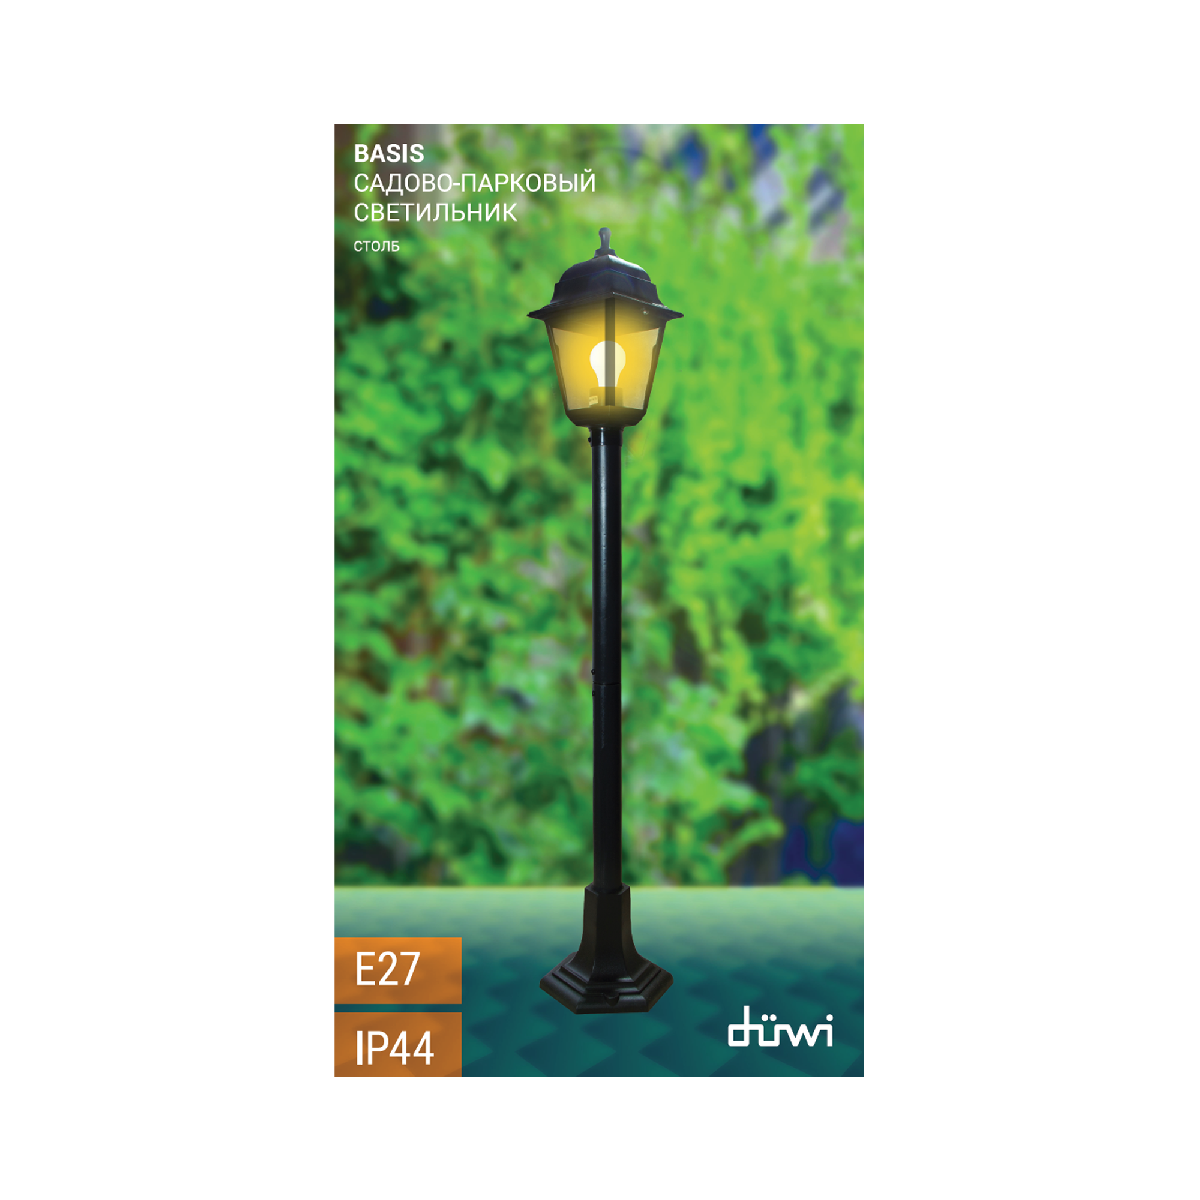 Ландшафтный светильник Duwi Basis 24137 9